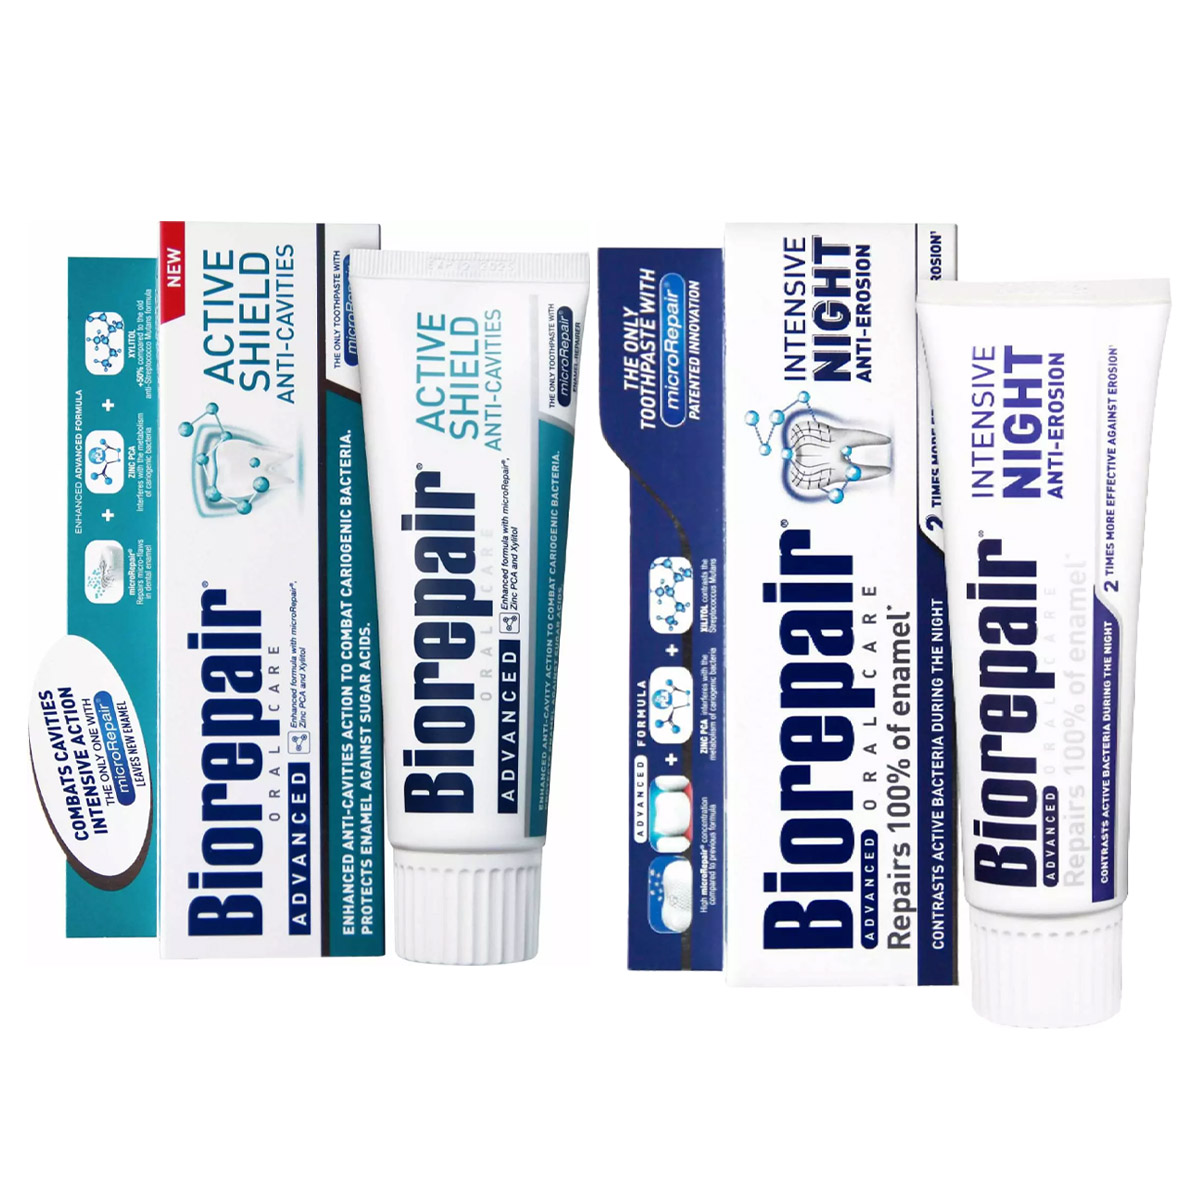 Biorepair Набор зубных паст для защиты эмали, 2х75 мл (Biorepair, Отбеливание и лечение) цена и фото